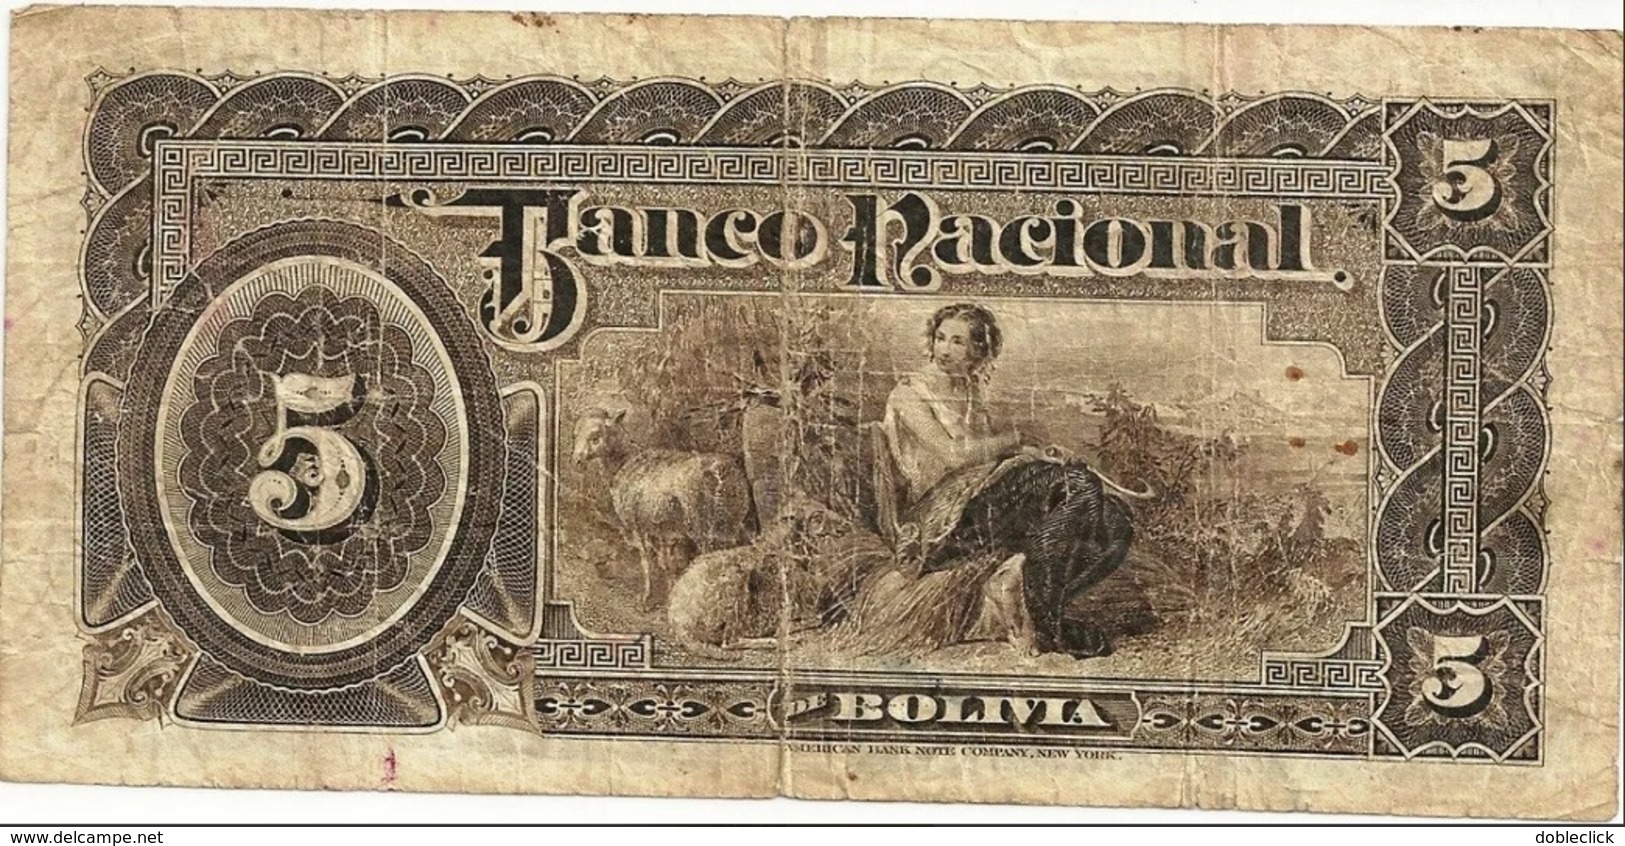 BOLIVIA - BANCO NACIONAL NOTE 5 BOLIVIANOS - 1892 - FINE - Bolivia